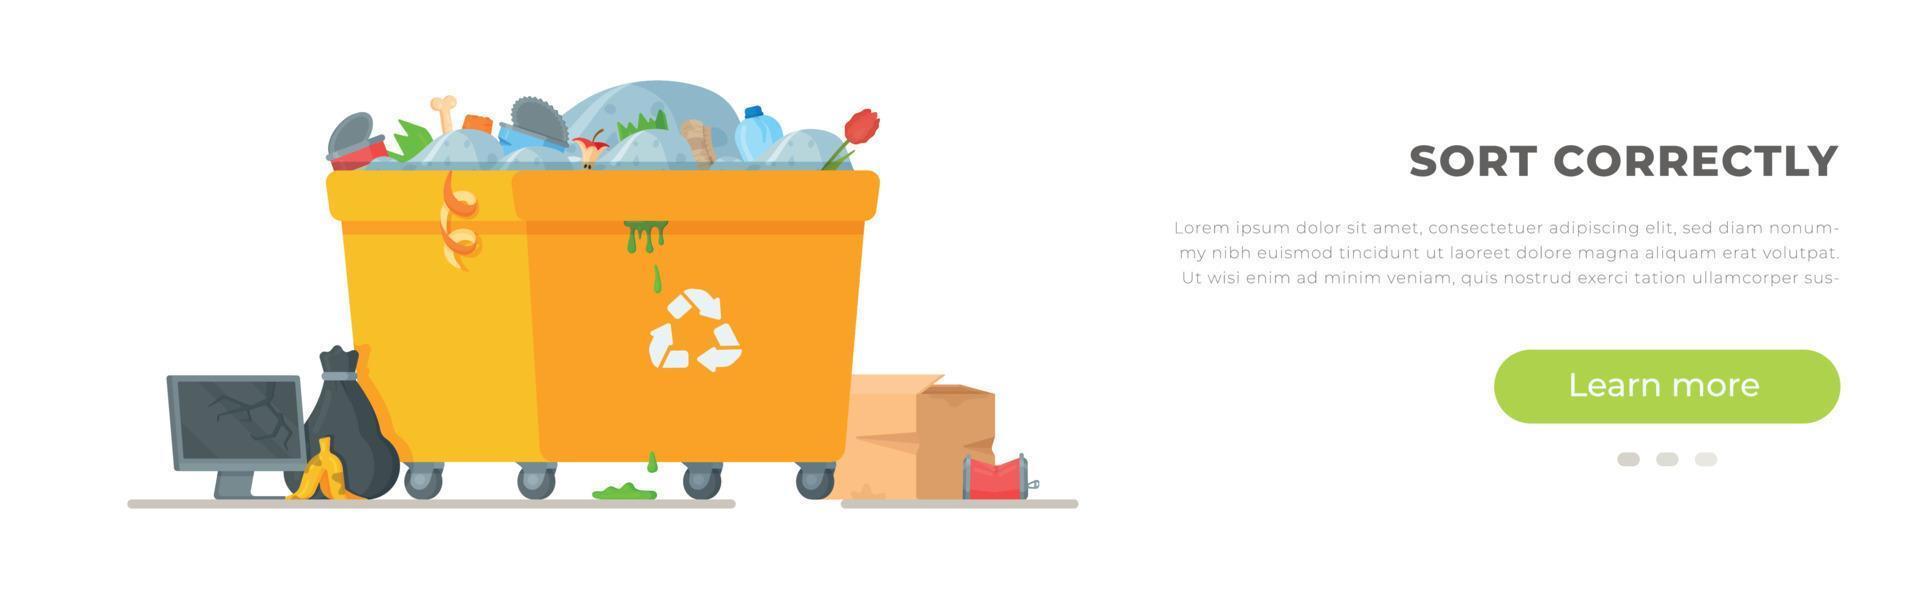 banner vectorial a la papelera. ilustración sobre el tema del reciclaje de basura. vector